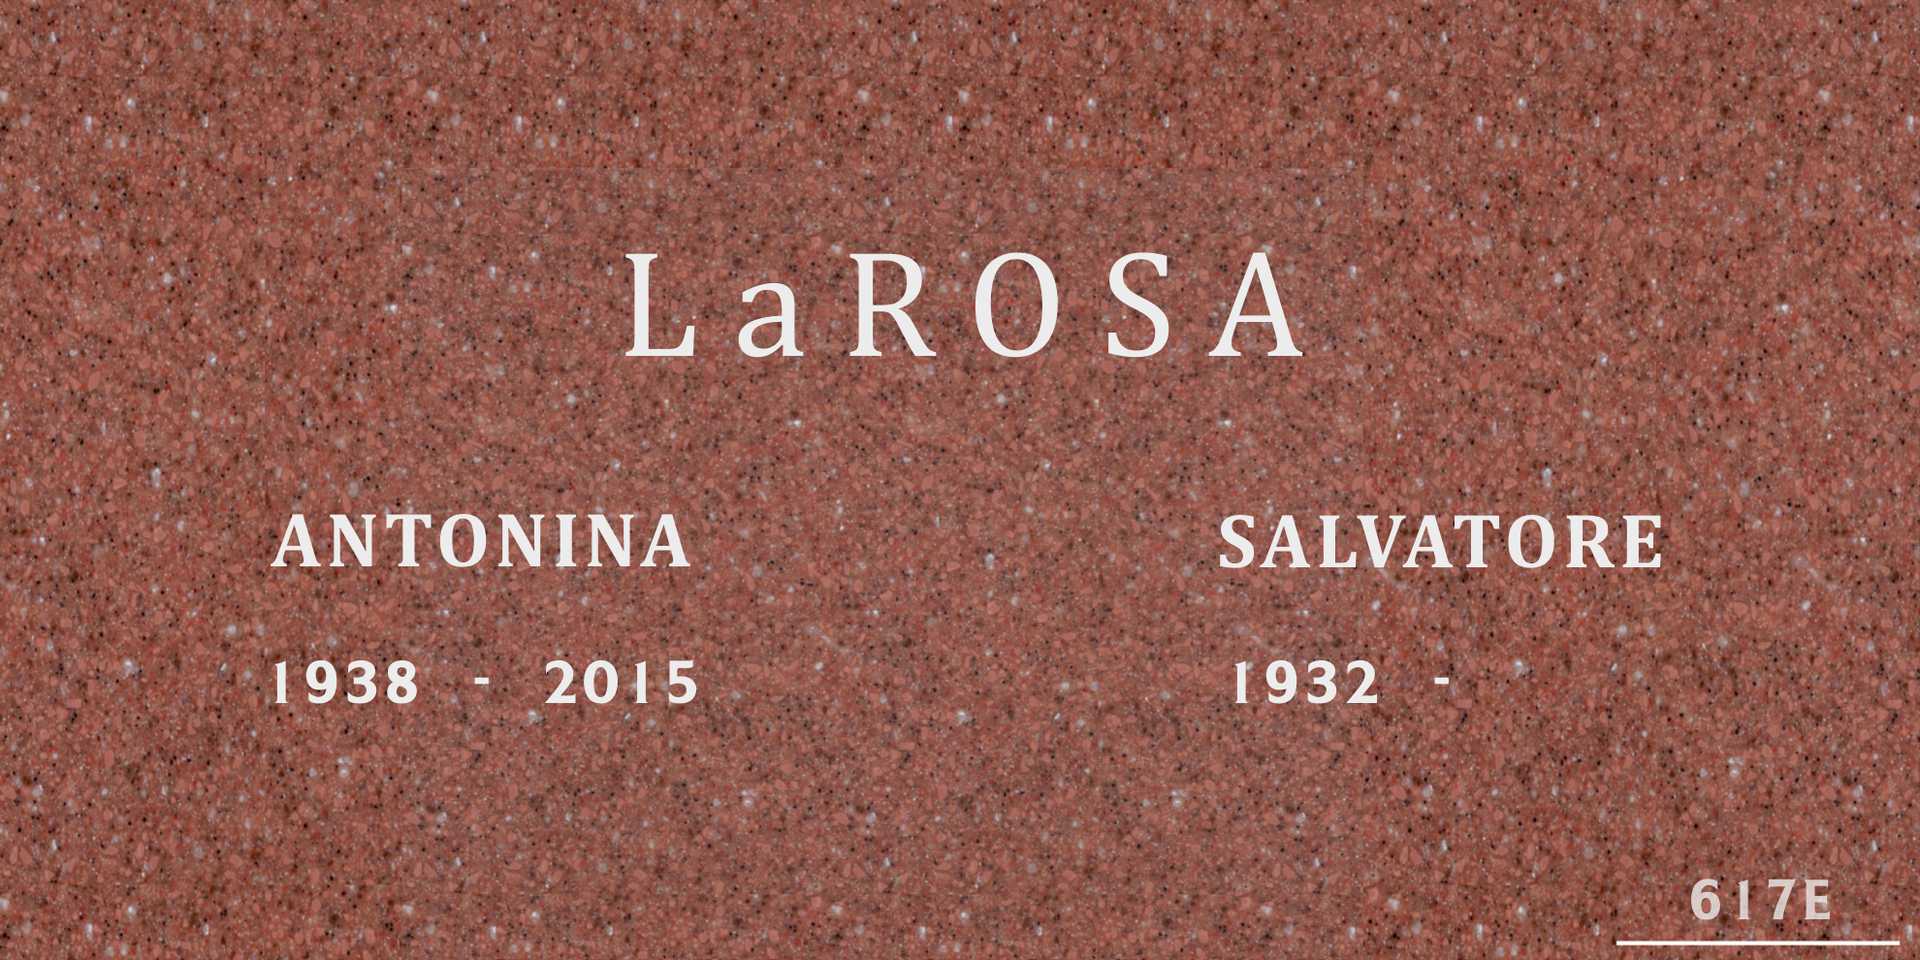 Salvatore "Sal "The Professor"" La Rosa's grave